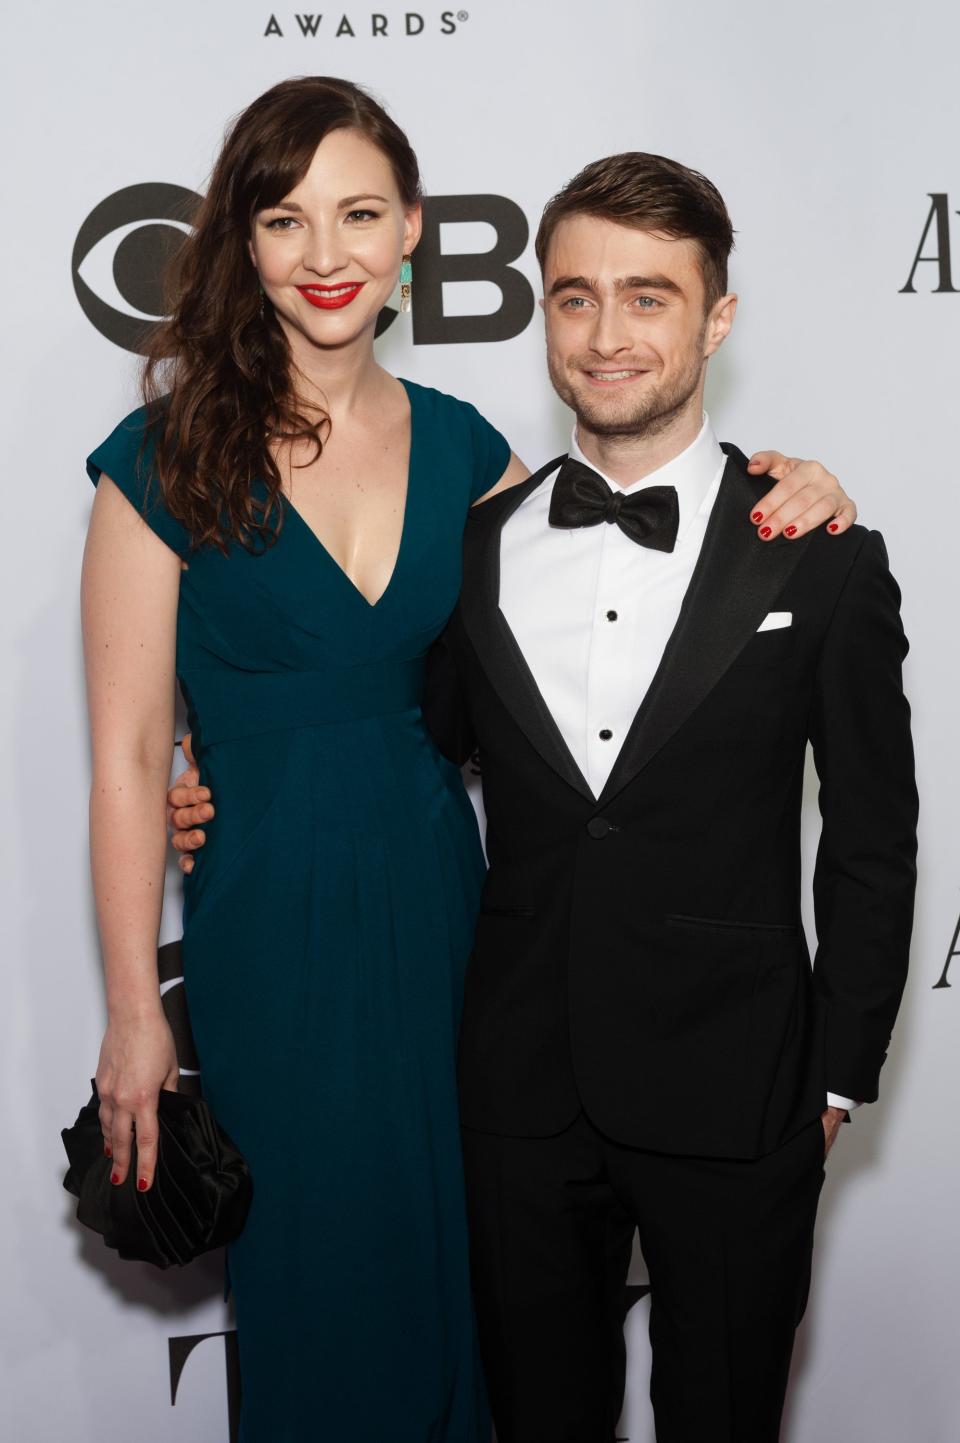 Erin Darke in a dark green gown standing taller than Daniel Radcliffe in a tuxedo.